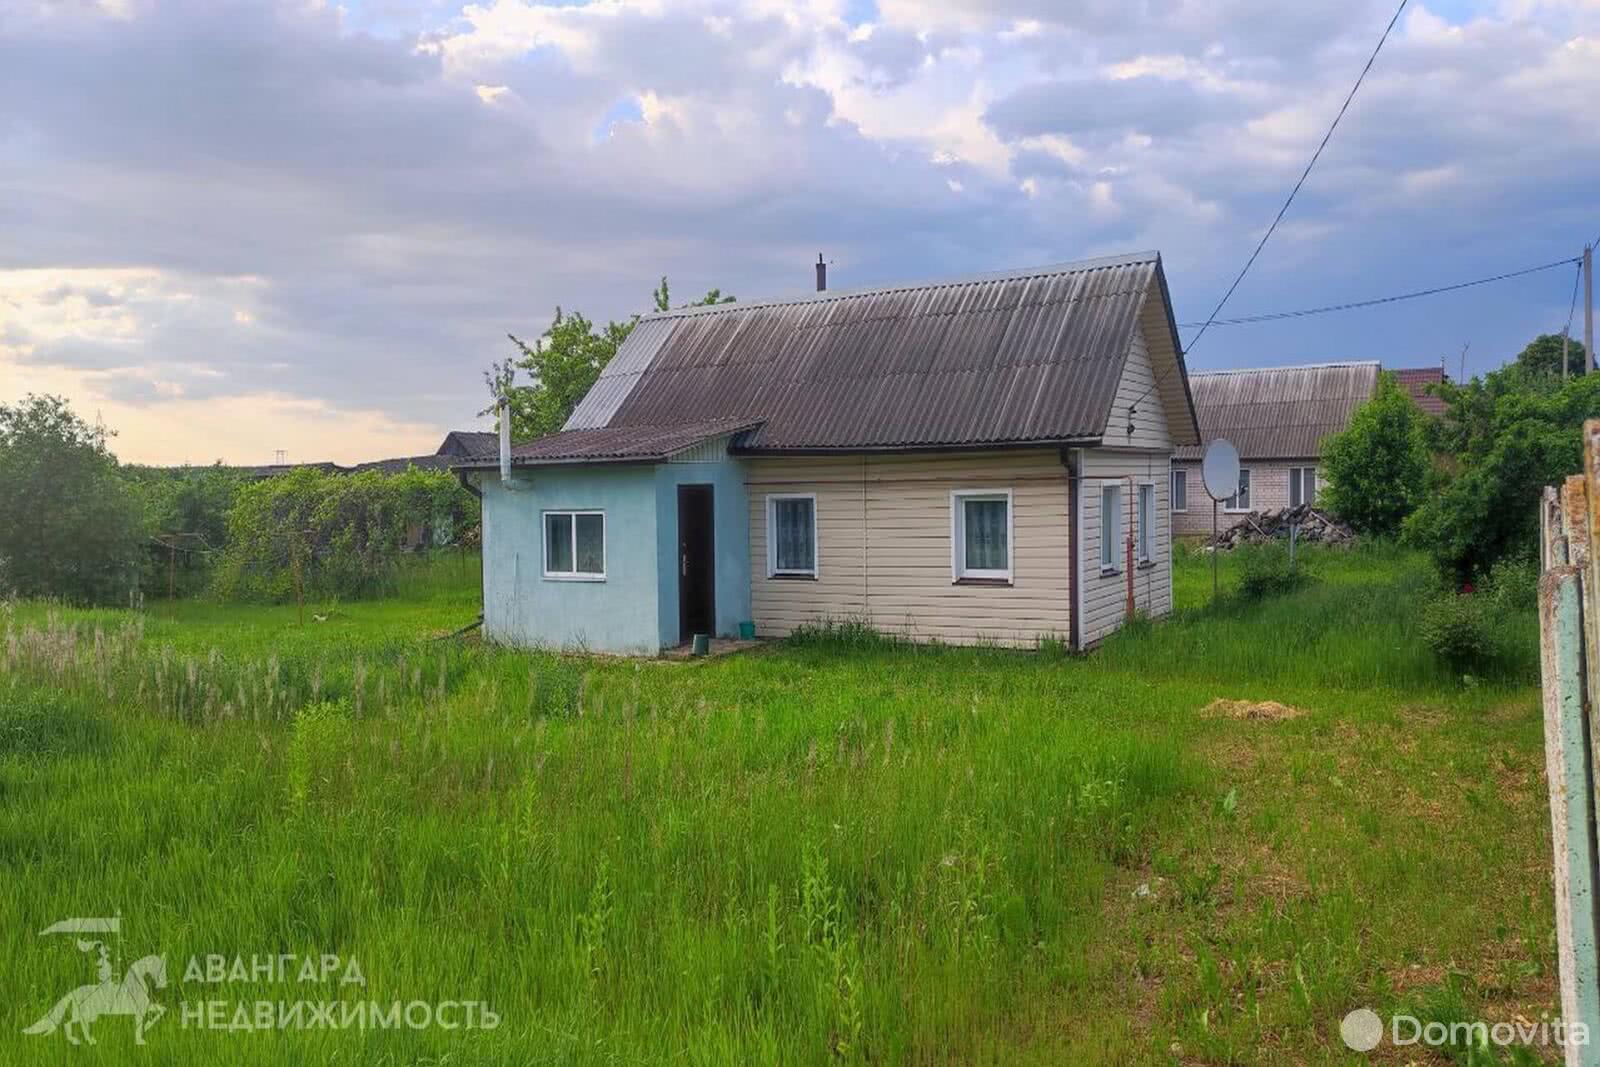 Продать 2-этажный дом в Заямном, Минская область ул. Берегового, 21000USD, код 636677 - фото 2